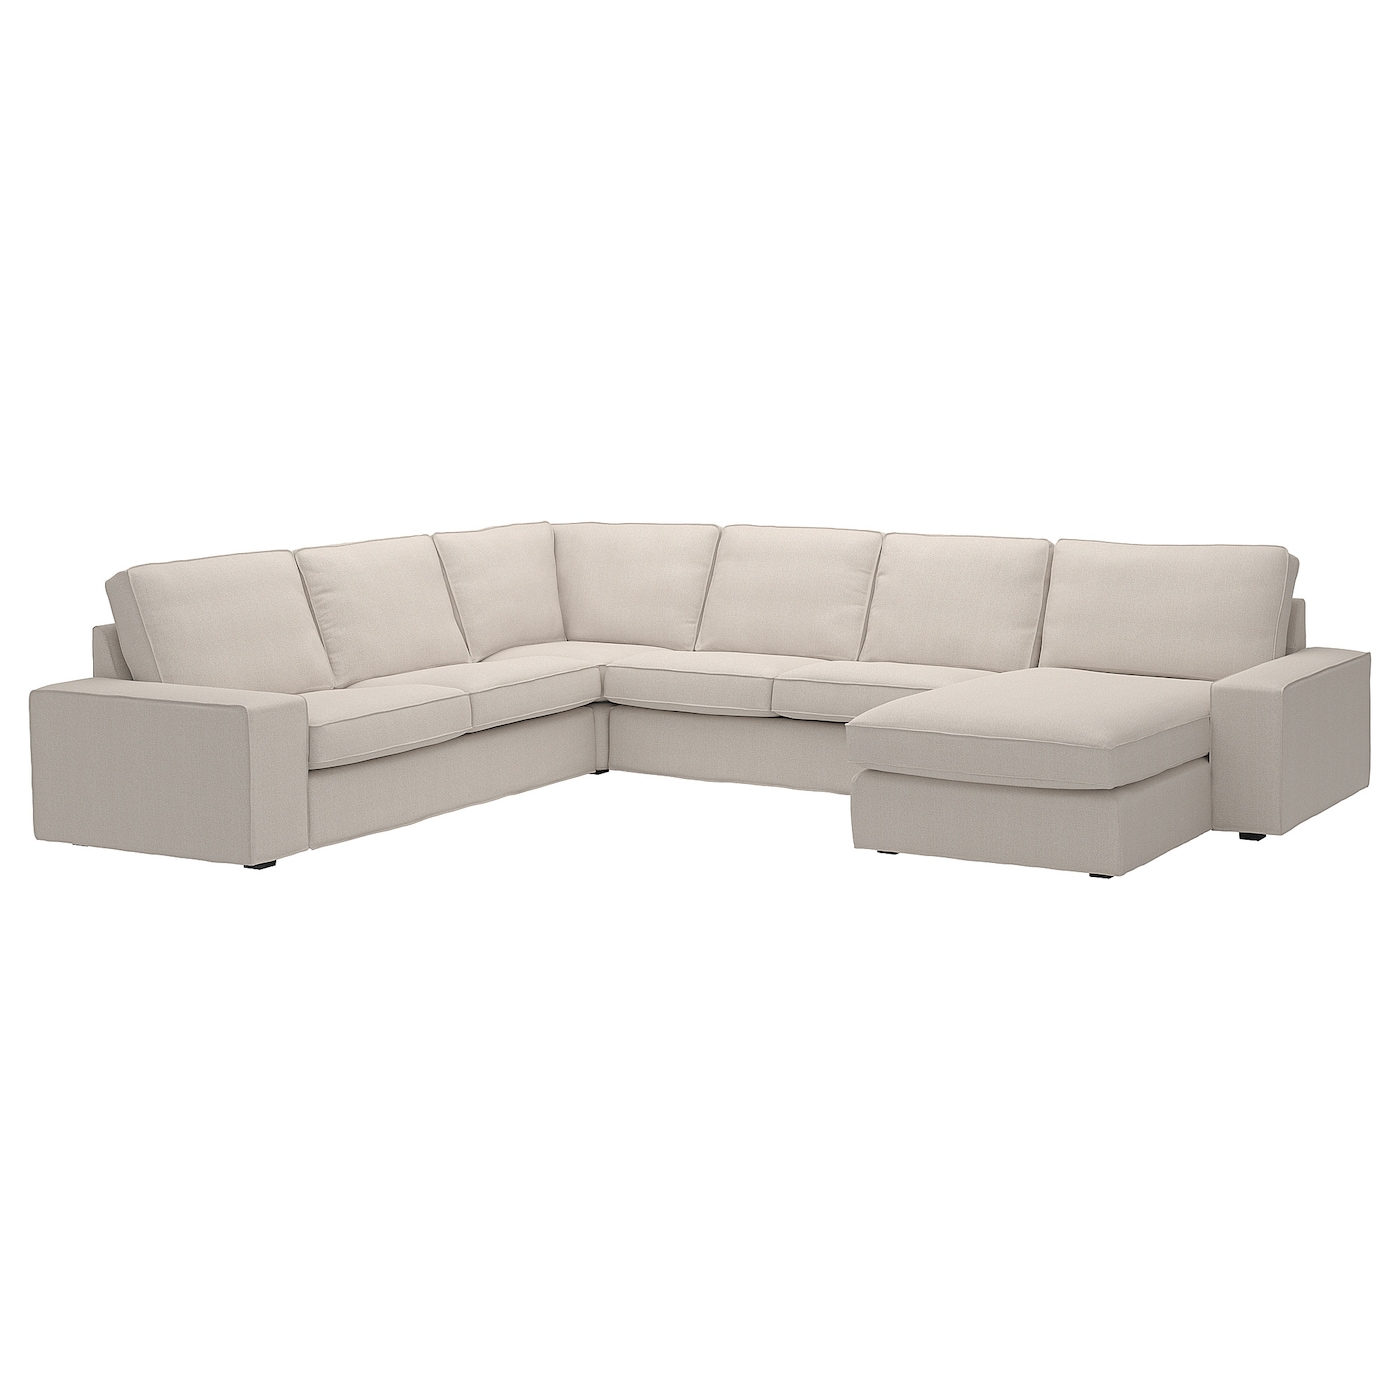 4-местный угловой диван и кушетка - IKEA KIVIK, 83x95x257/347см, бежевый, КИВИК ИКЕА